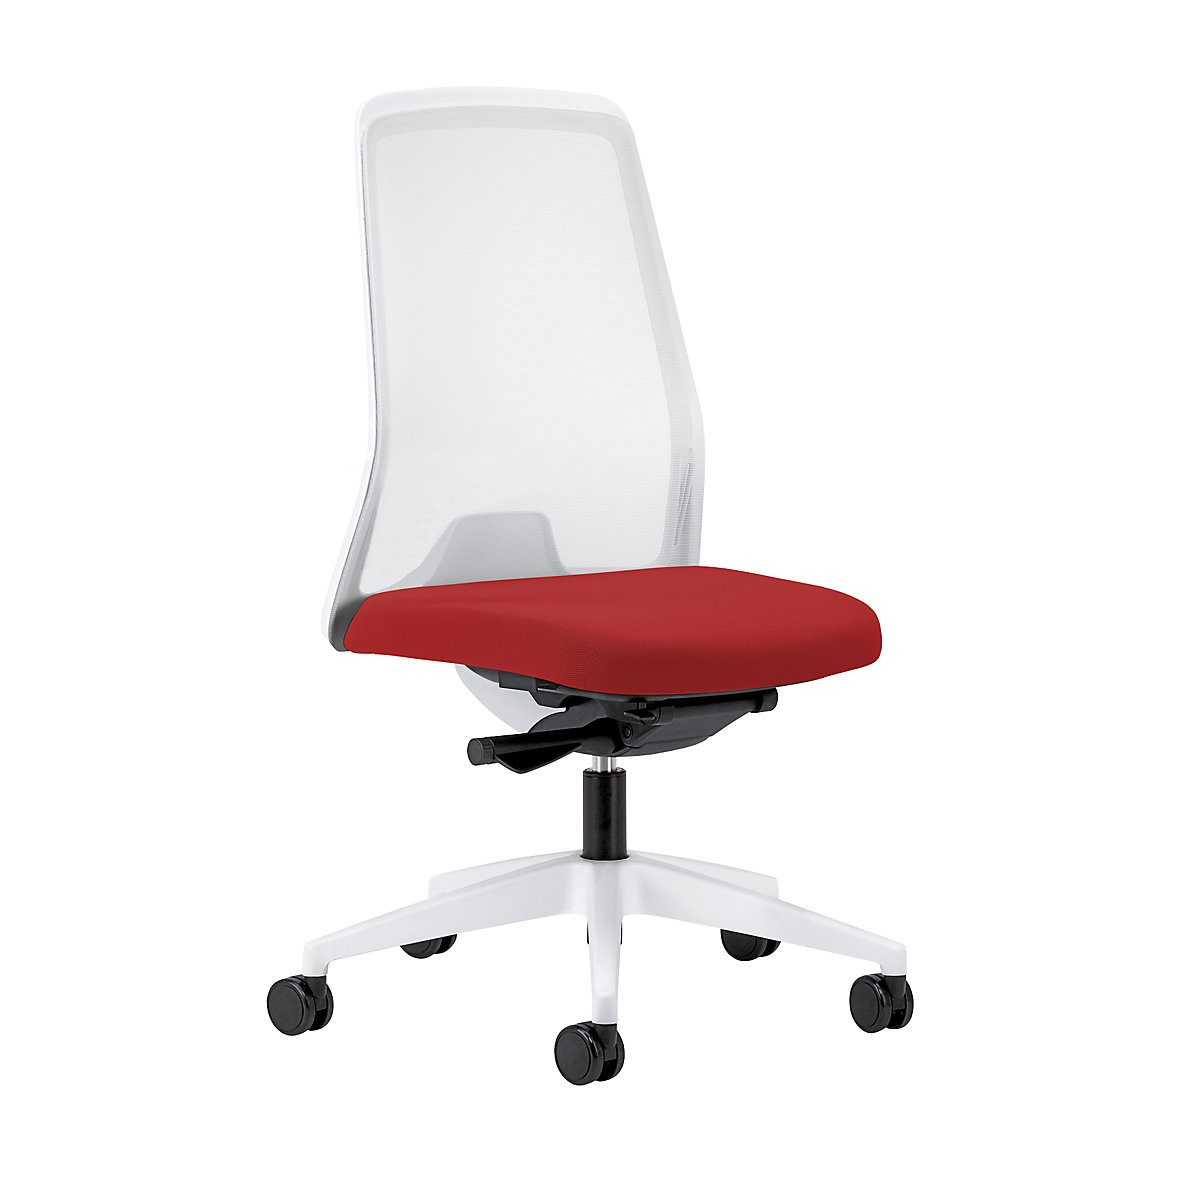 Krzesło obrotowe dla operatora EVERY, oparcie siatkowe, białe – interstuhl